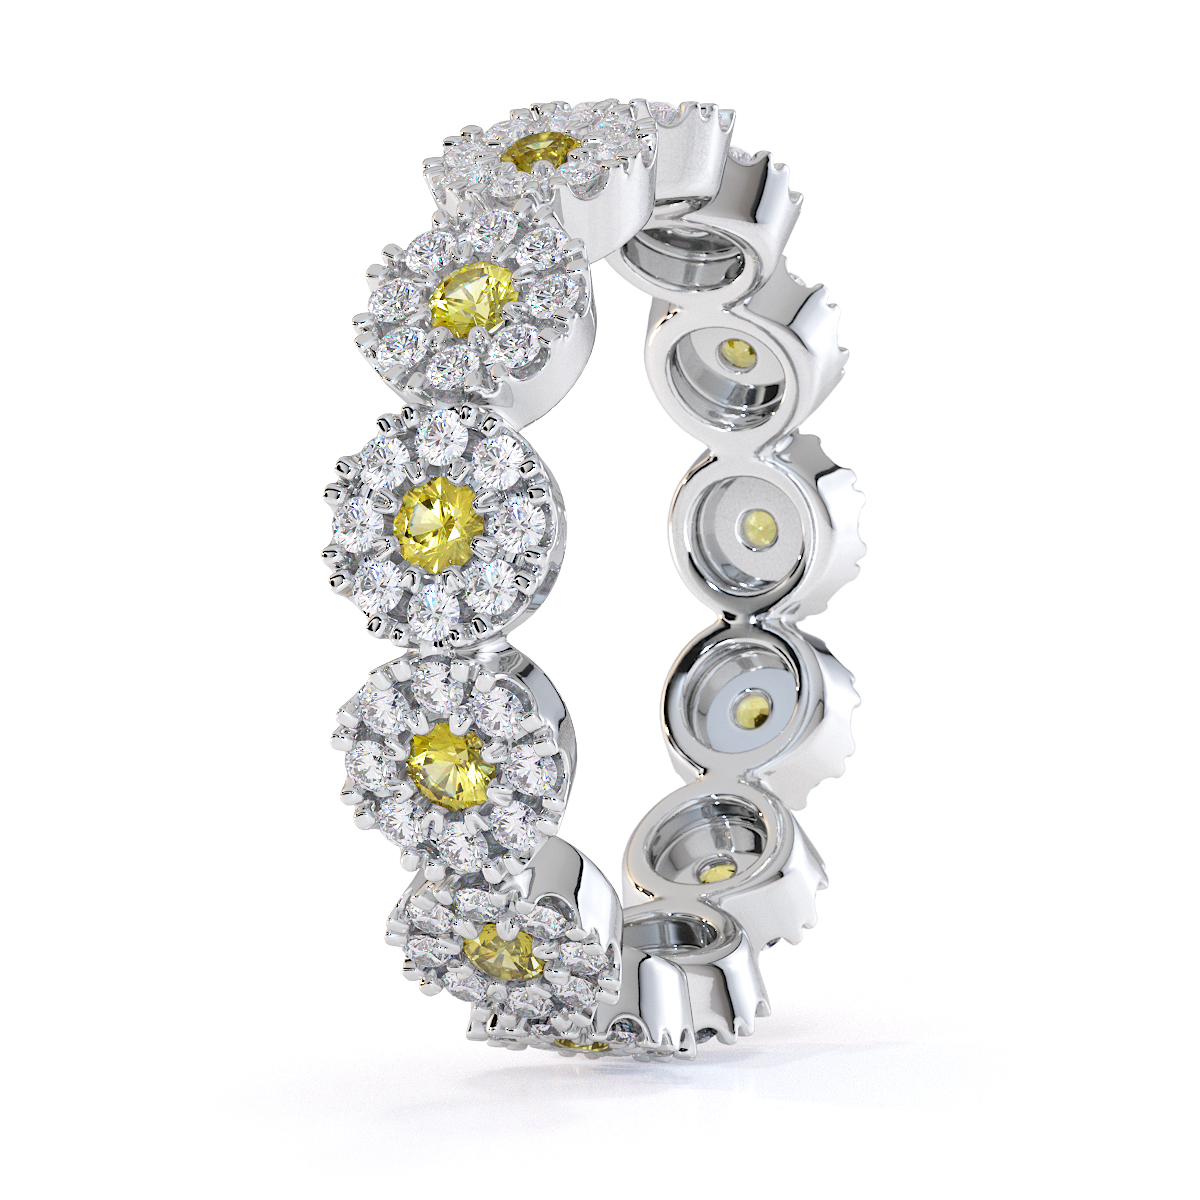 Gold / Platinum Yellow Sapphire and Diamond Full Eternity Ring RZ1530